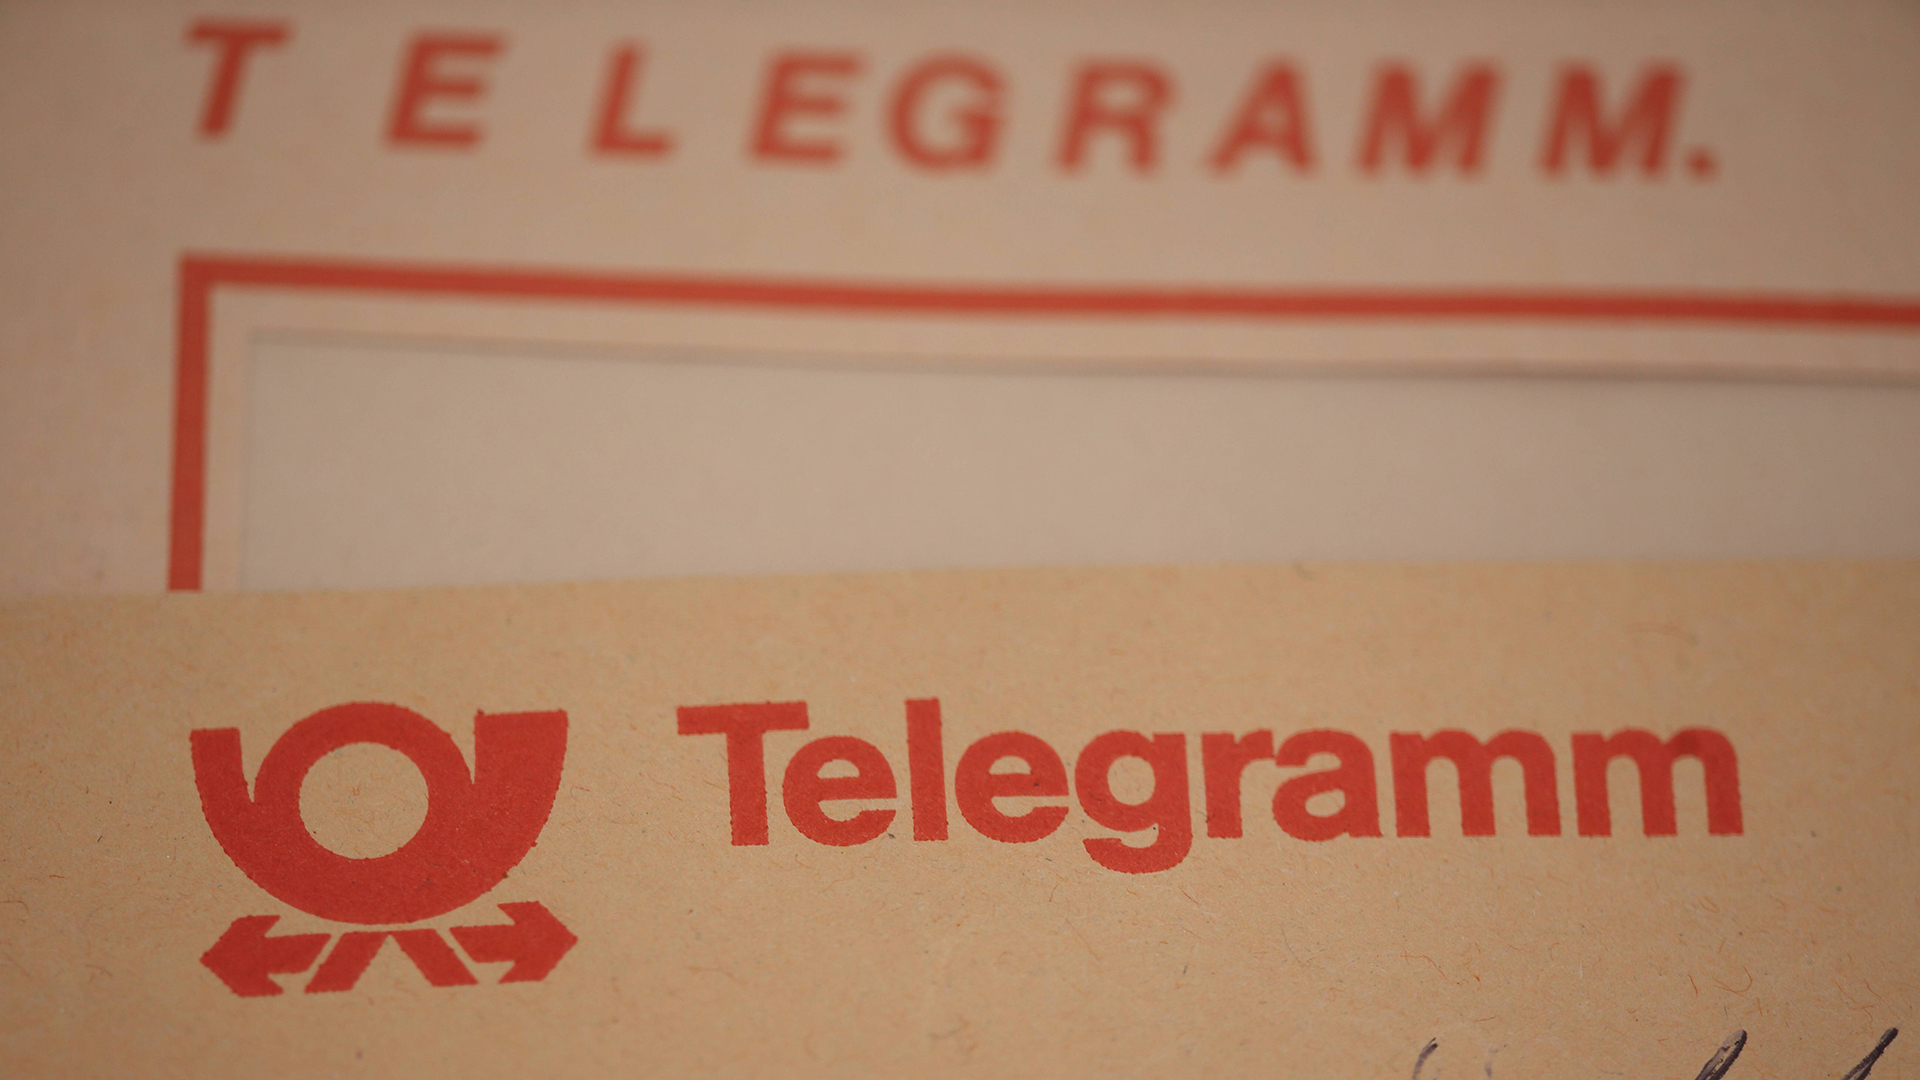 Formular für ein Telegramm | imago/Gerhard Leber